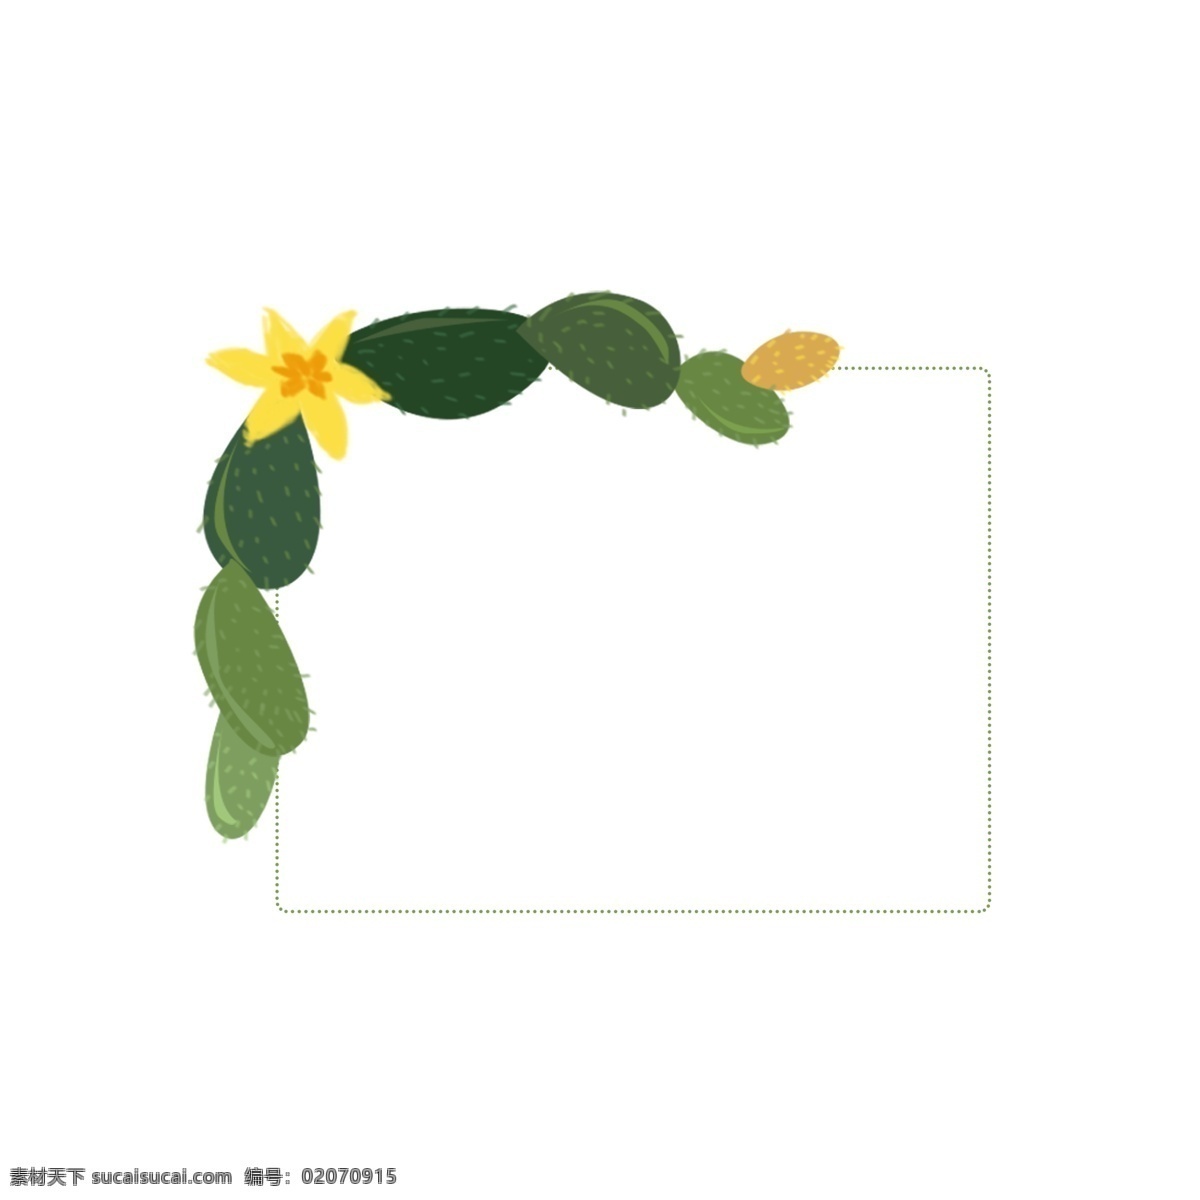 仙人掌 植物 绿色 插 画风 边框 花 小清新 植物边框 插画风